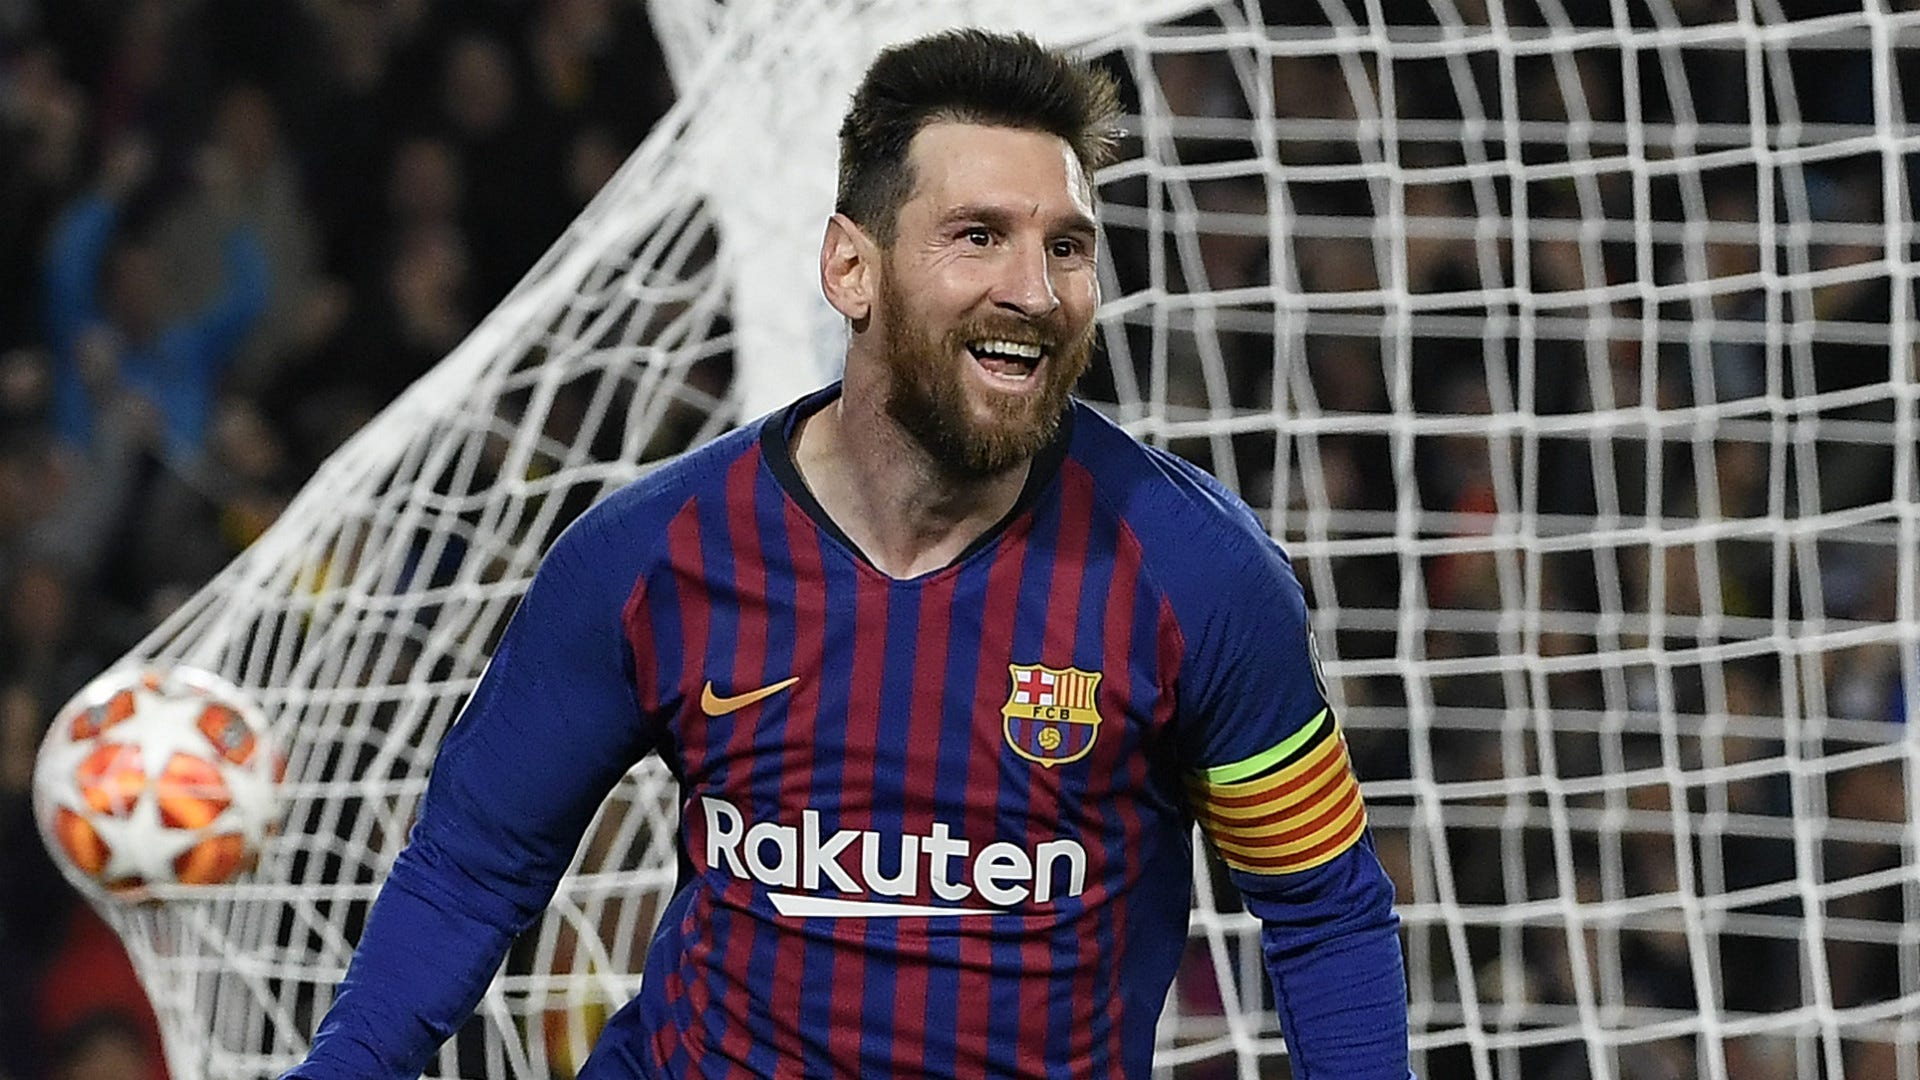 Hãy cùng khám phá hình ảnh của Messi trong những trận đấu đỉnh cao của Champions League - đấu trường hàng đầu của bóng đá châu Âu, với những pha bóng mang đậm nét cá tính cá nhân mà chỉ riêng anh mới có thể thực hiện được.